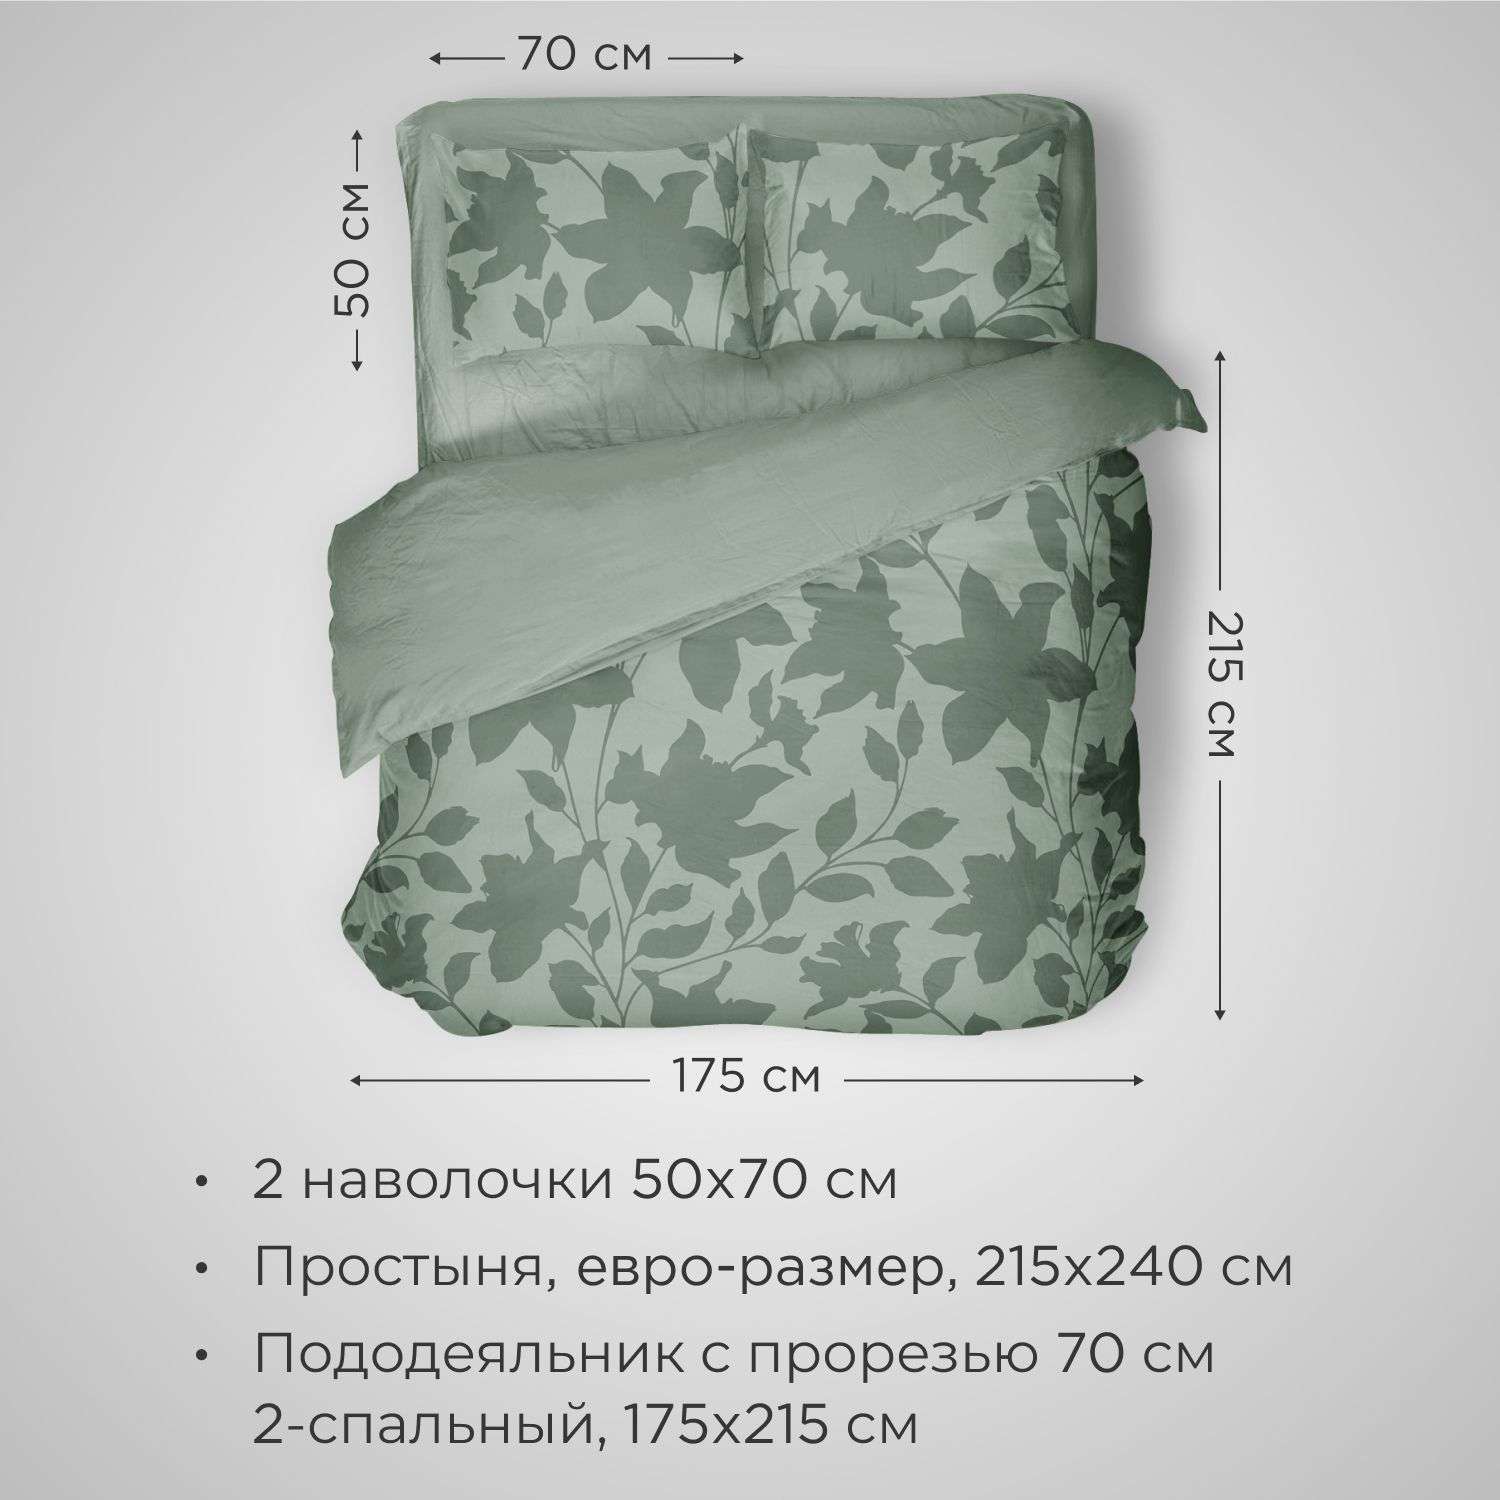 Комплект постельного белья SONNO URBAN FLOWERS 2-спальный цвет Цветы светло-оливковый - фото 2